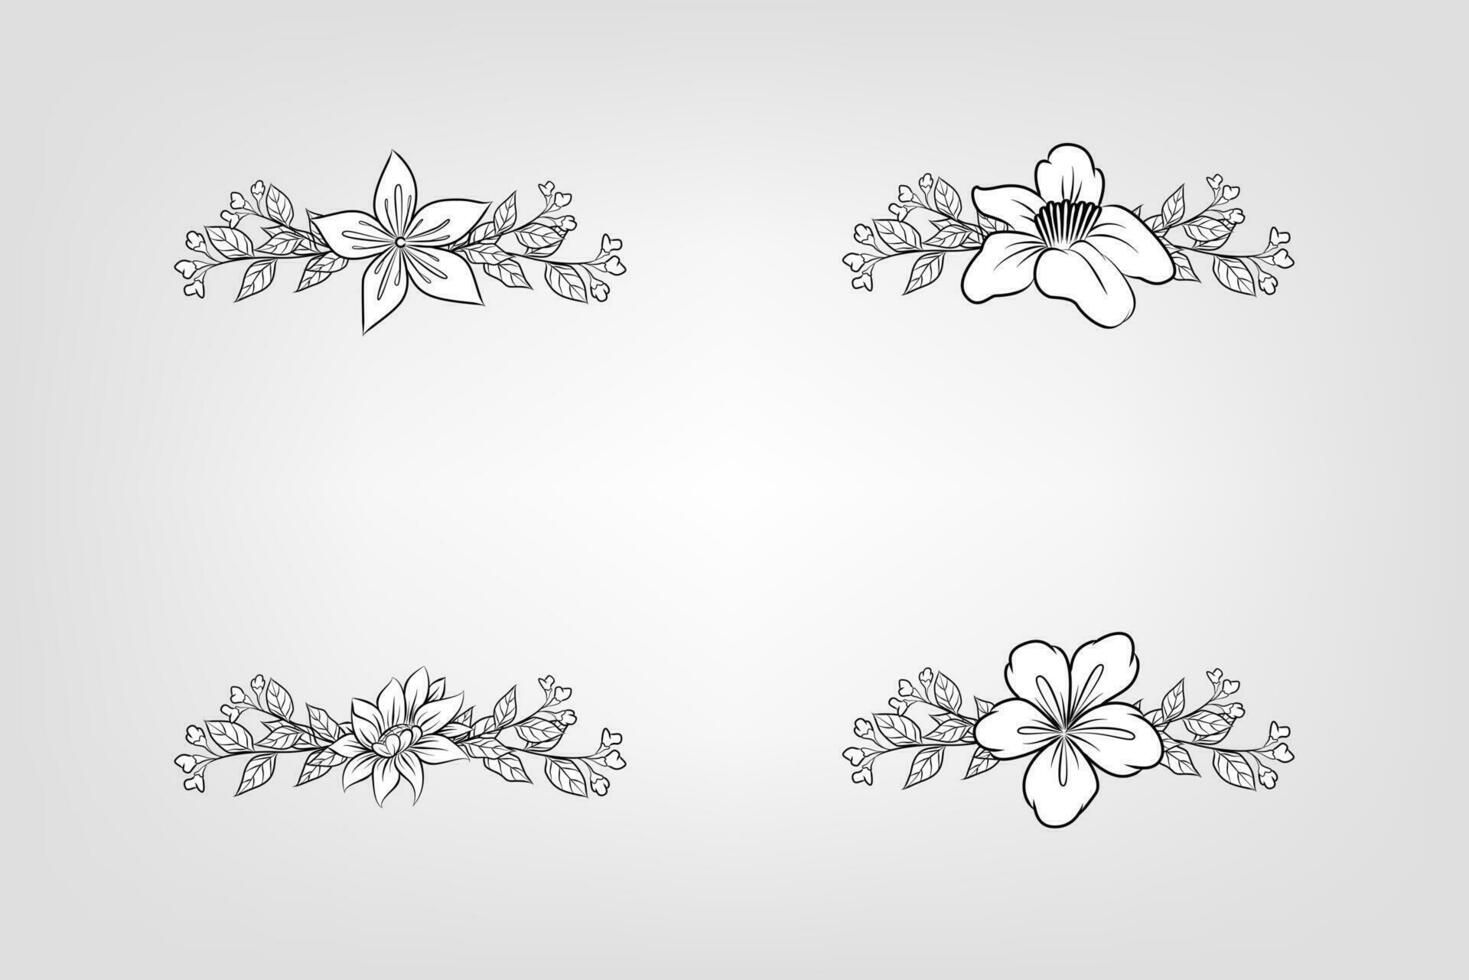 floral blumen laub arrangement kranz vektor